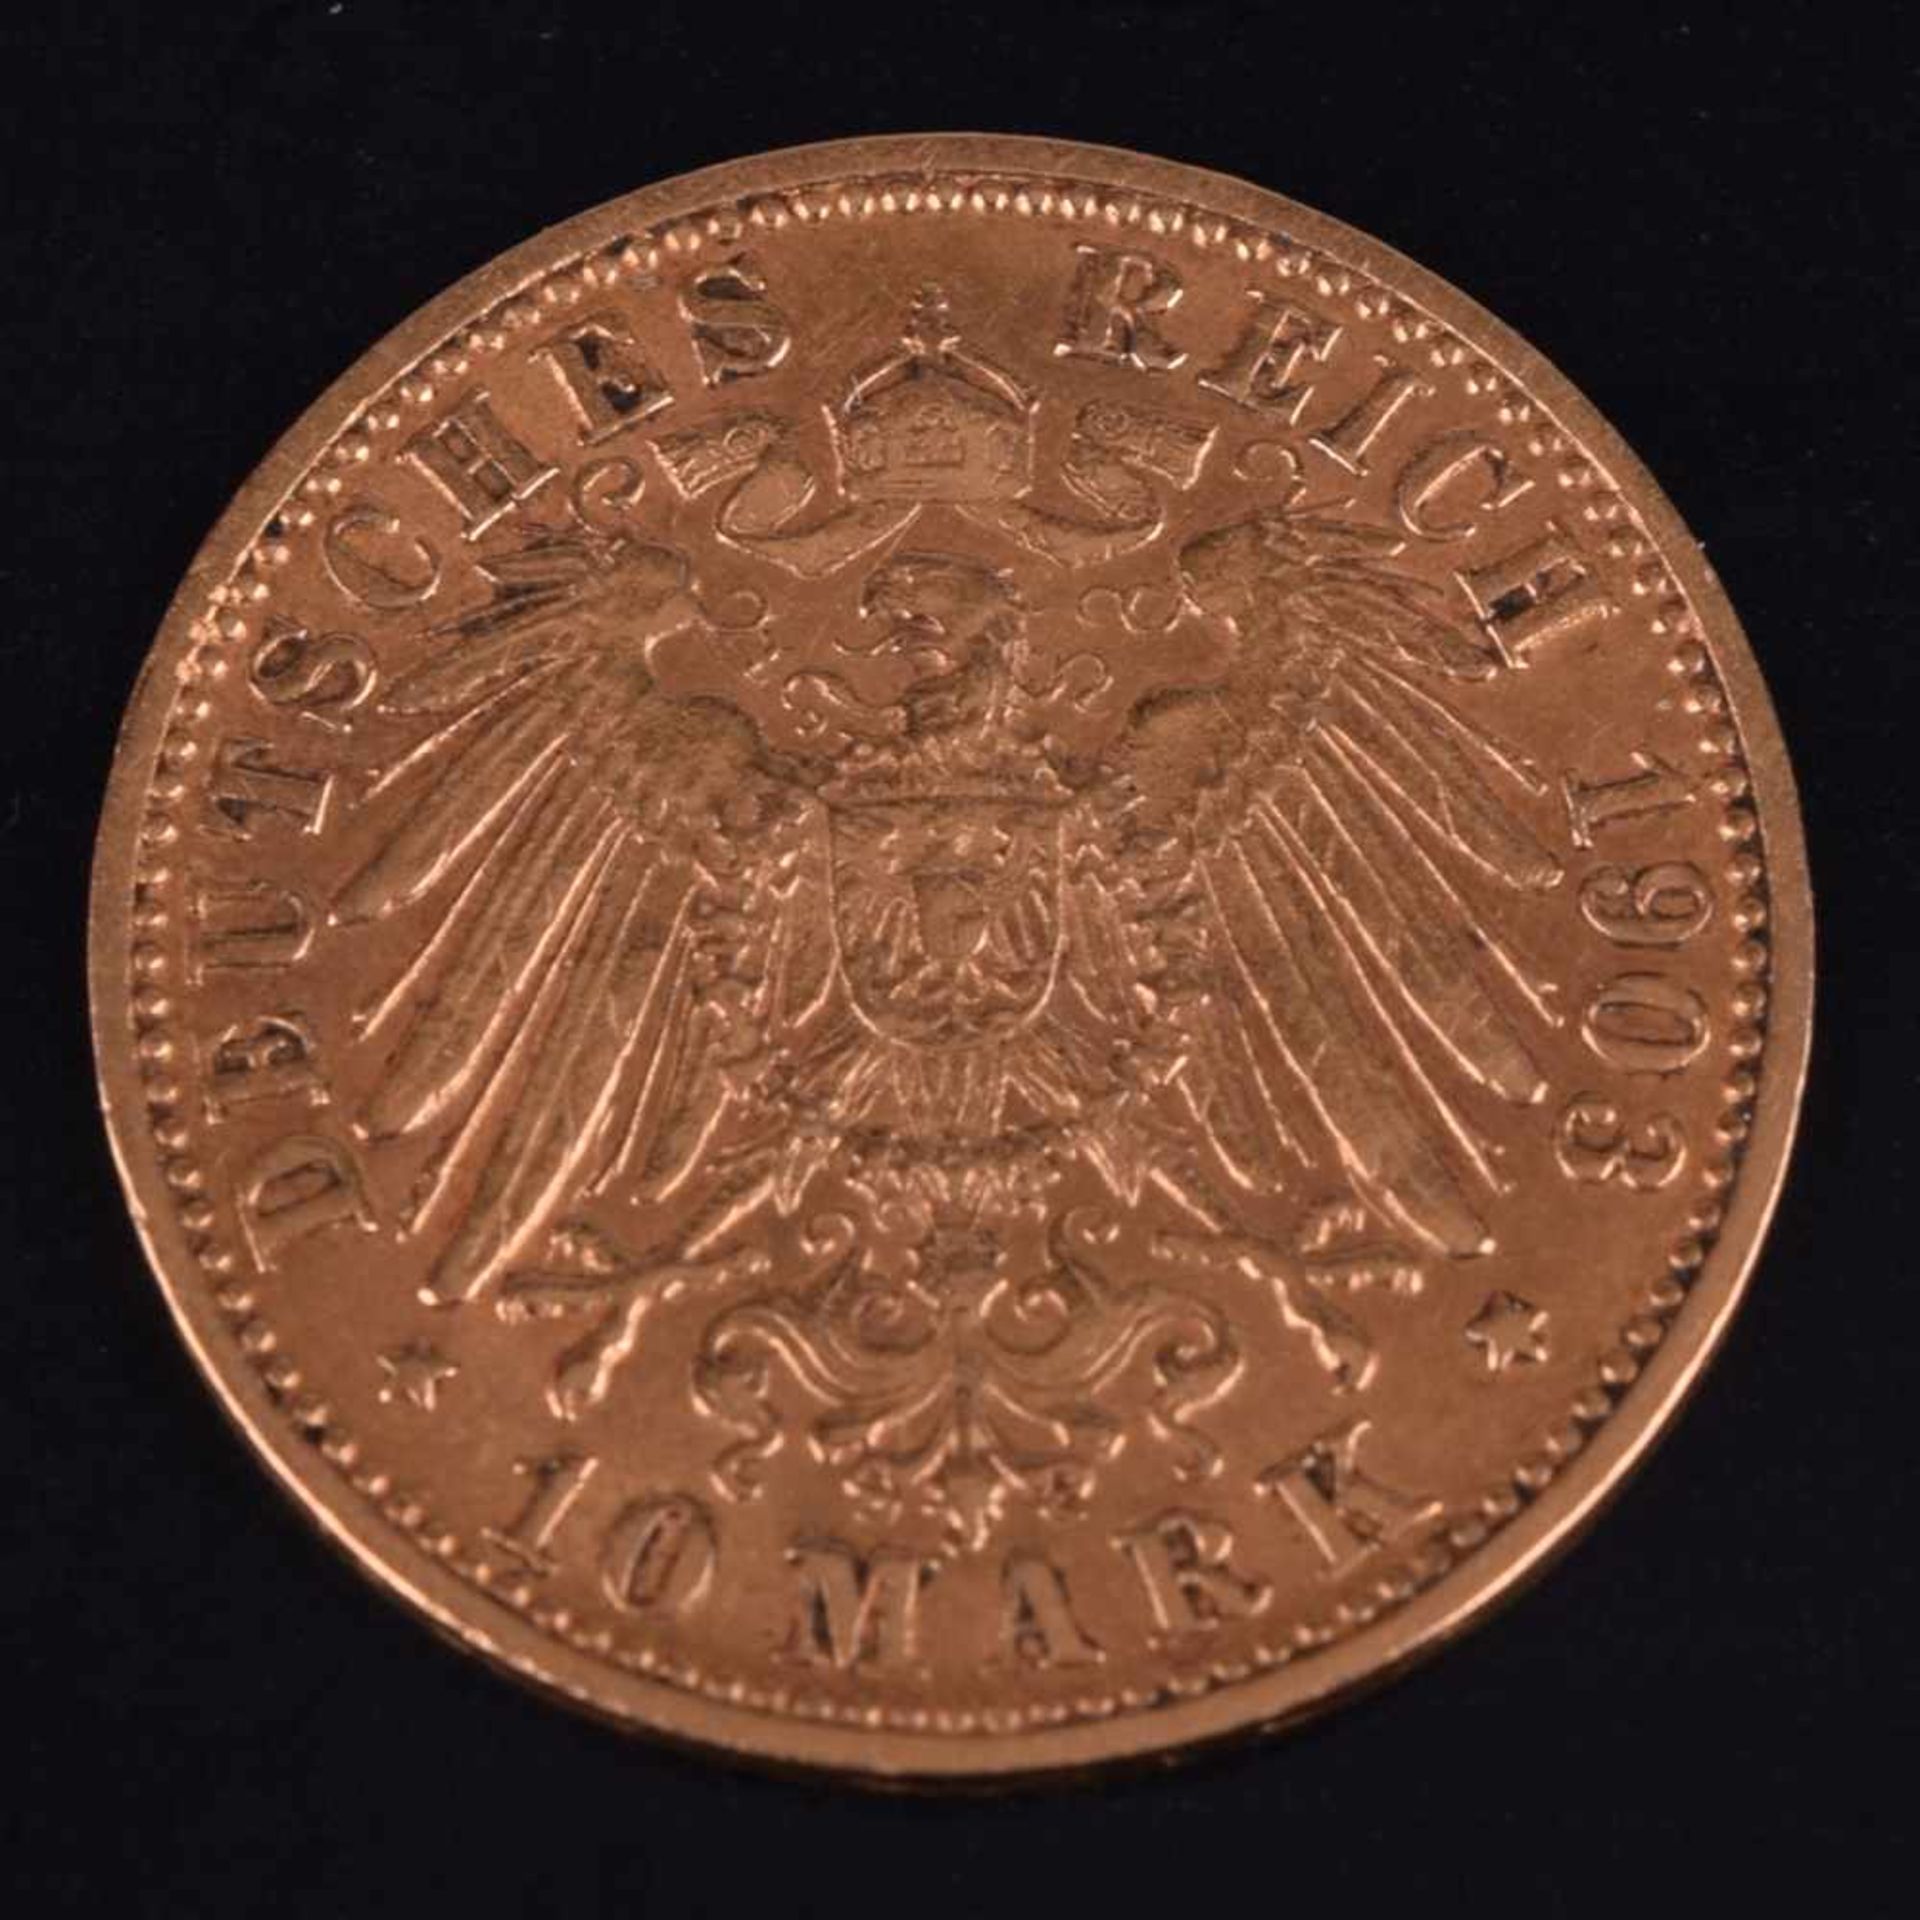 Goldmünze Kaiserreich - Württemberg 1903 10 Mark in Gold, 900/1000, 3,58 g, av. Wilhelm II König von - Bild 3 aus 3